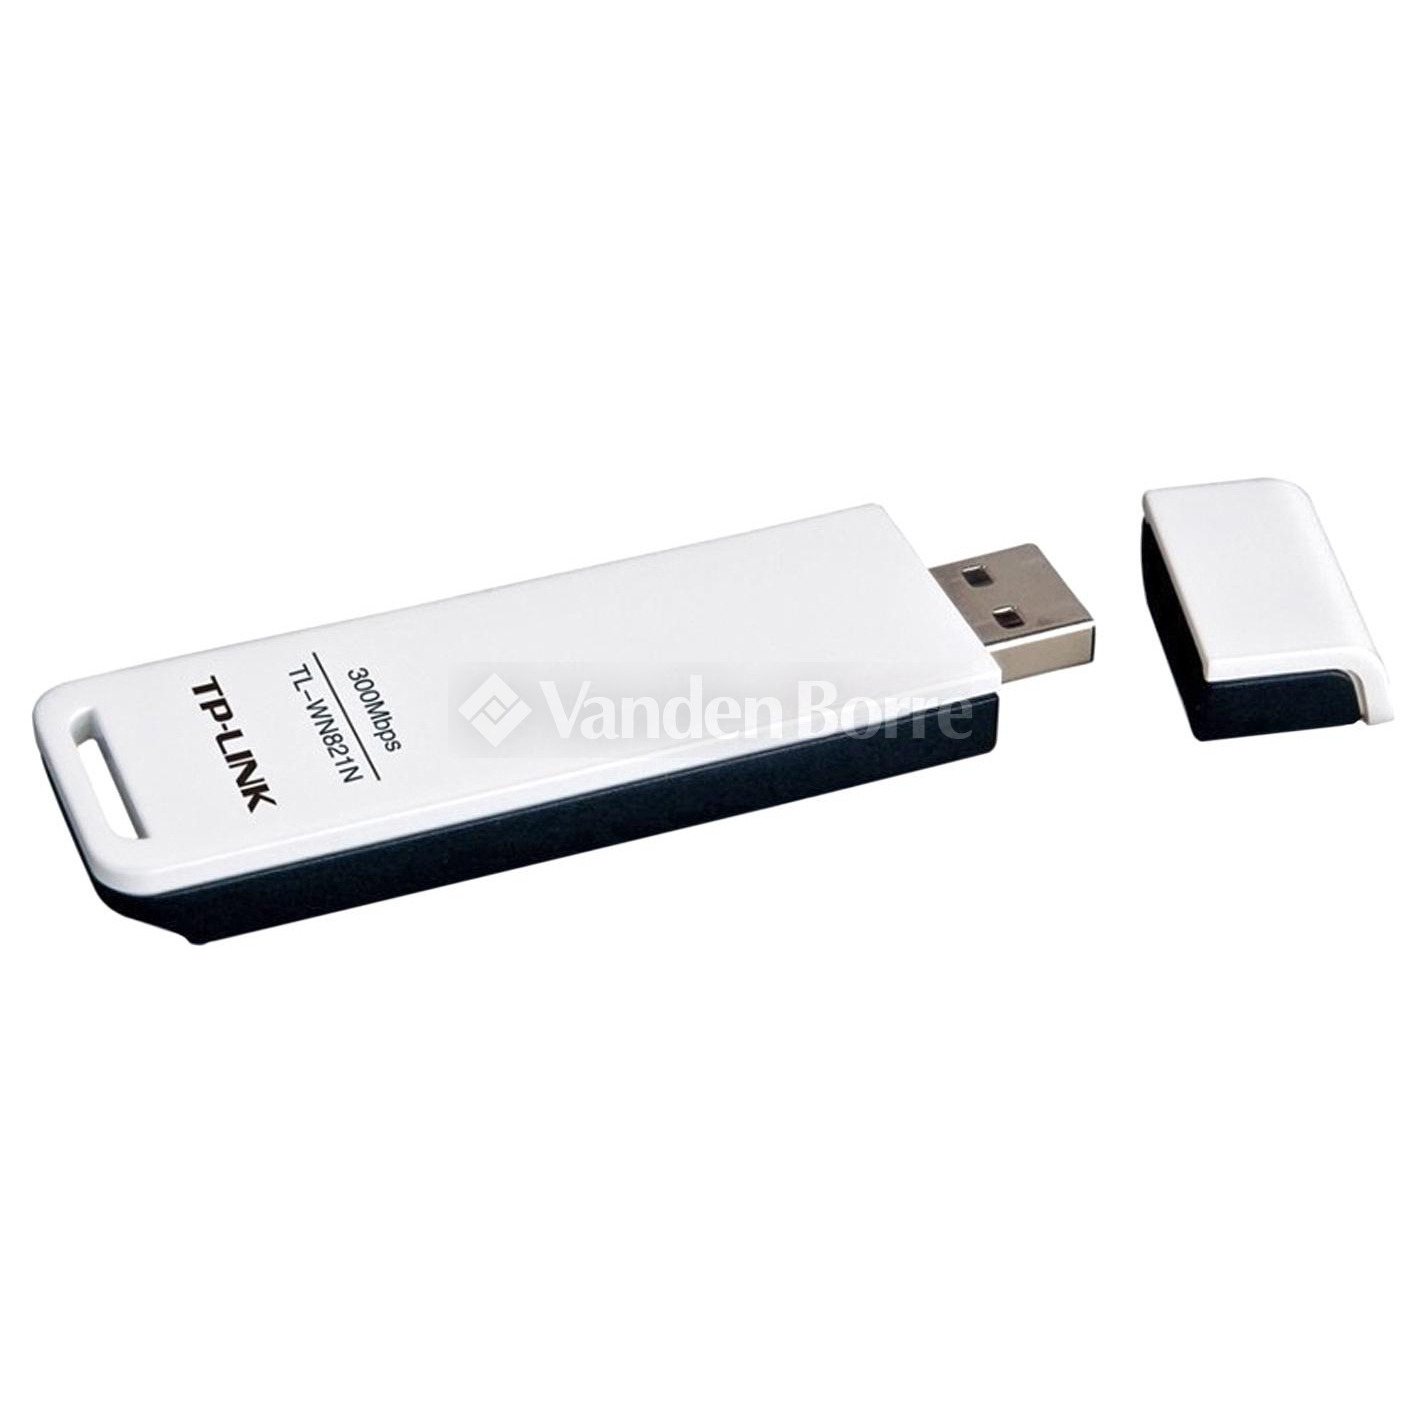 Clé USB wi-fi / Récepteur Bluetooth